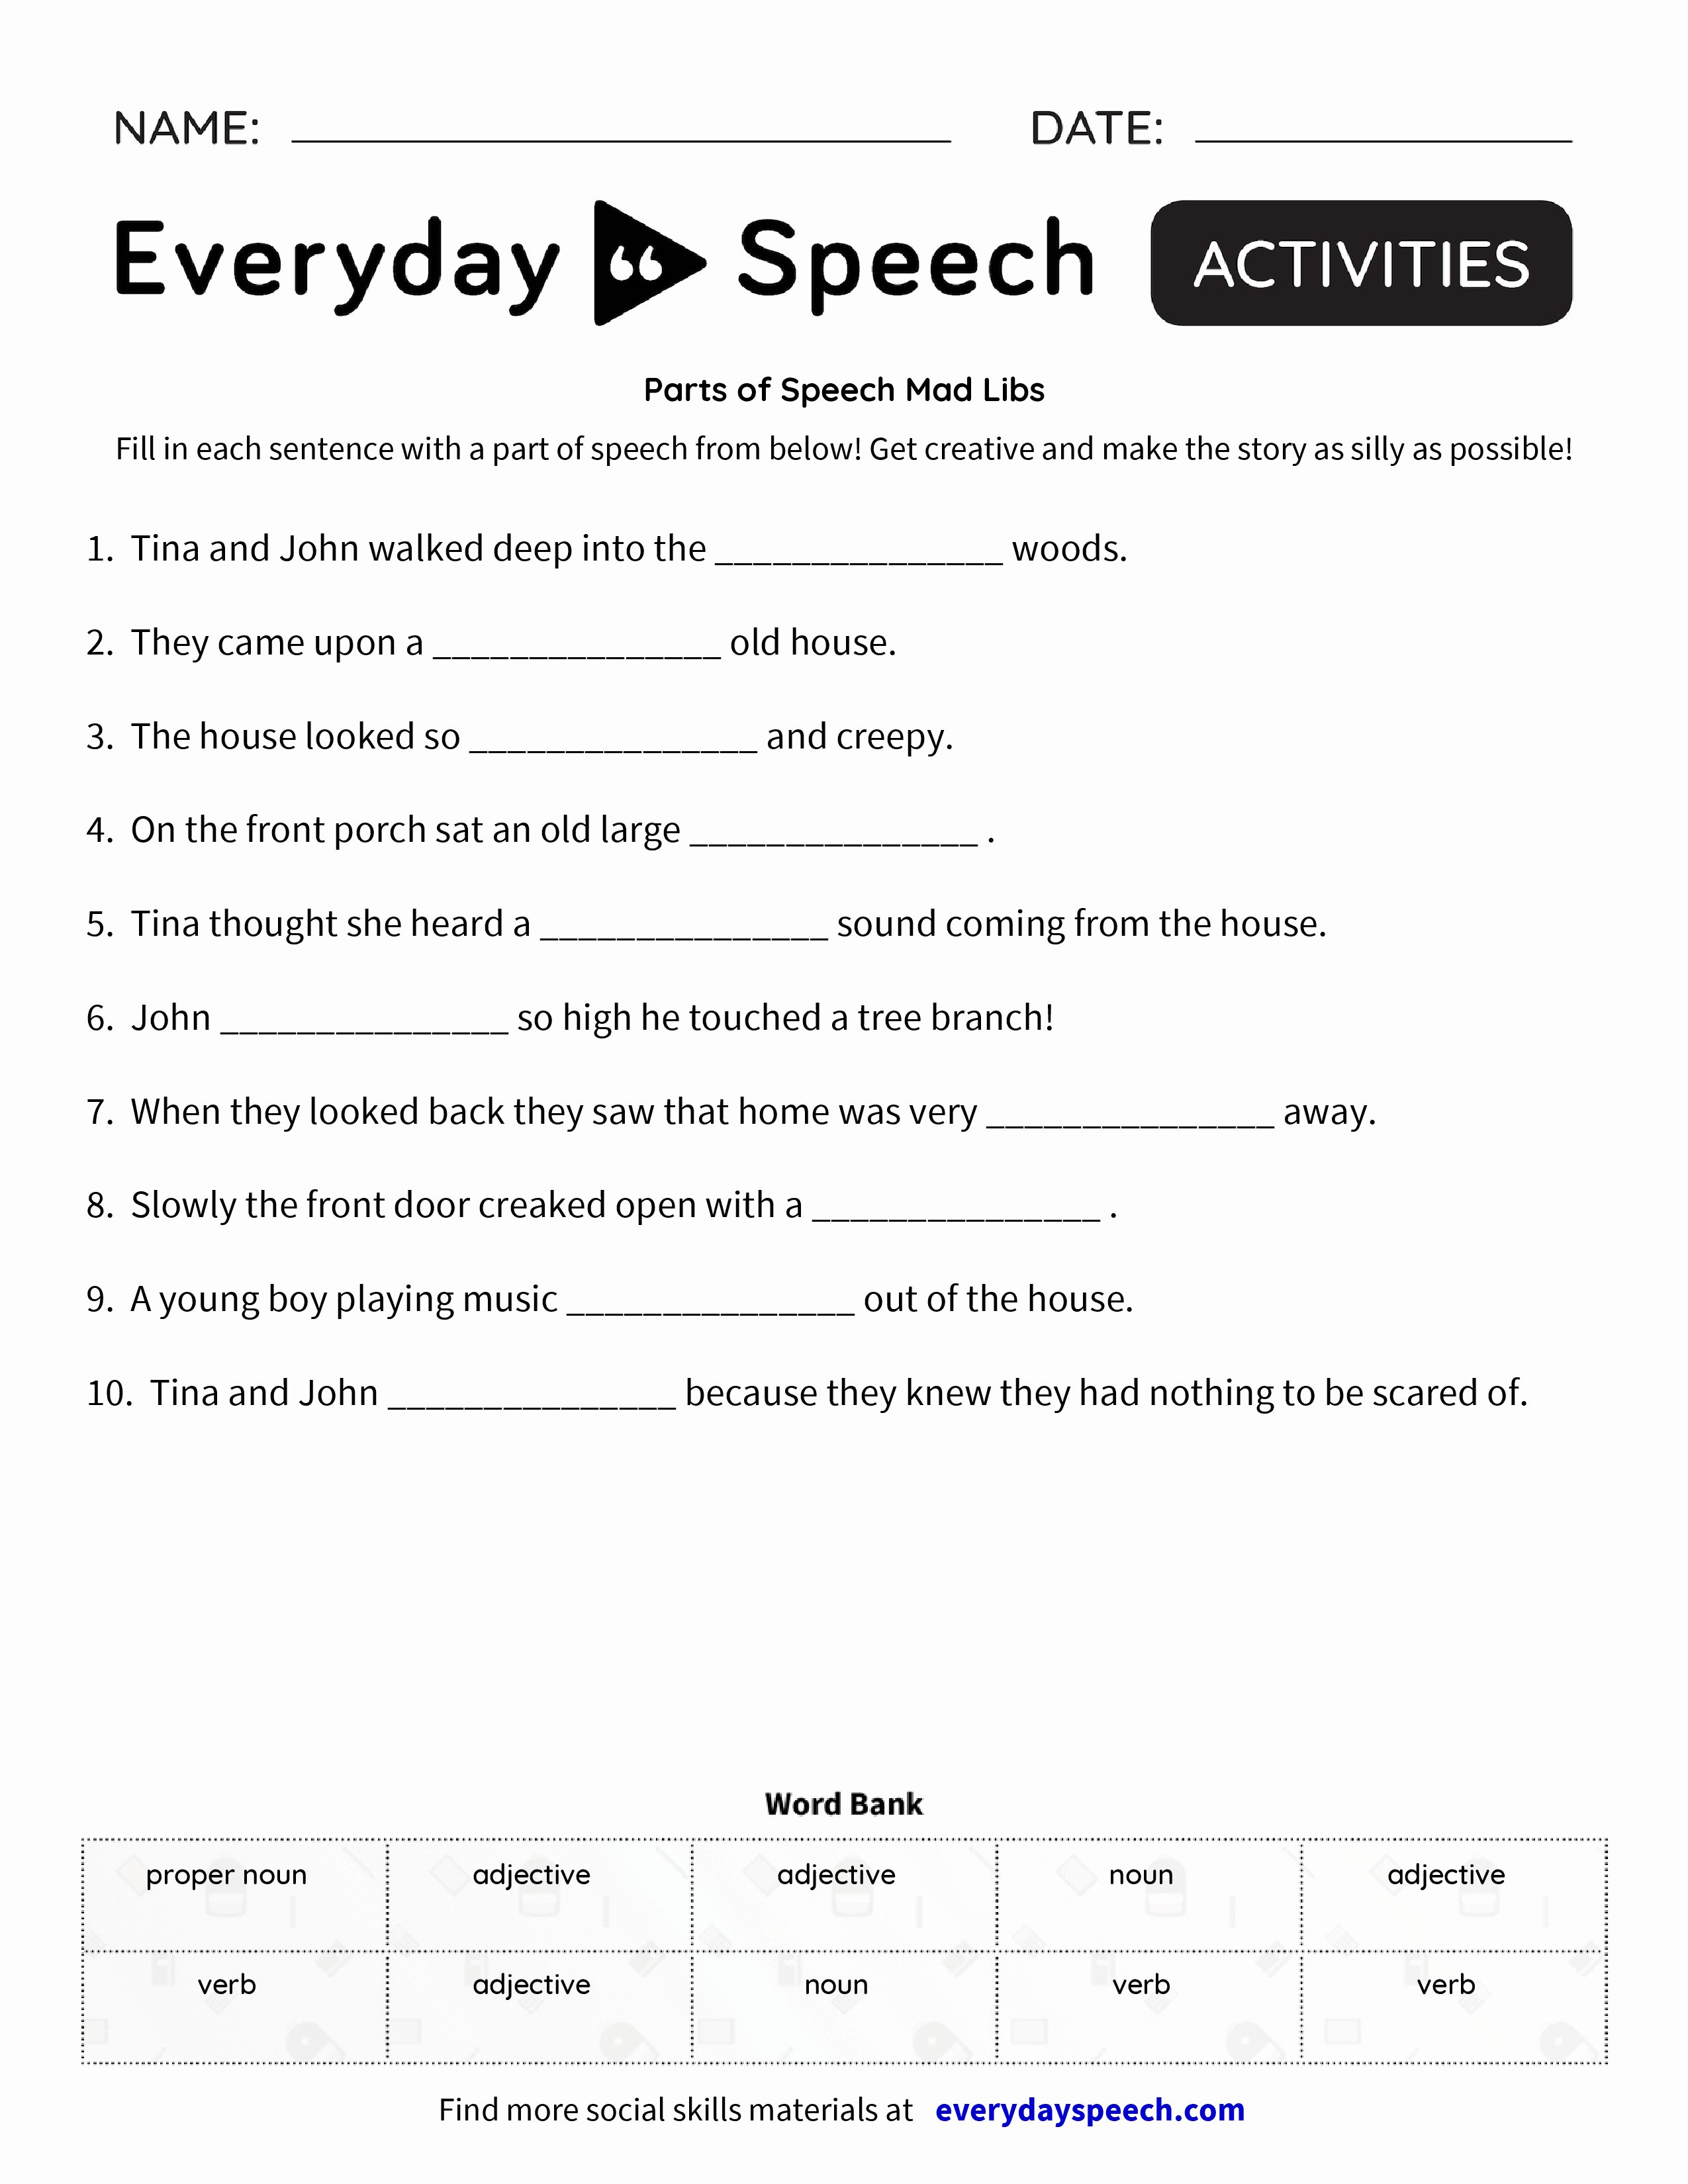 Part Of Speech Worksheet Pdf Inspirational Parts Of Speech Mad Libs Everyday Speech Everyday Speech